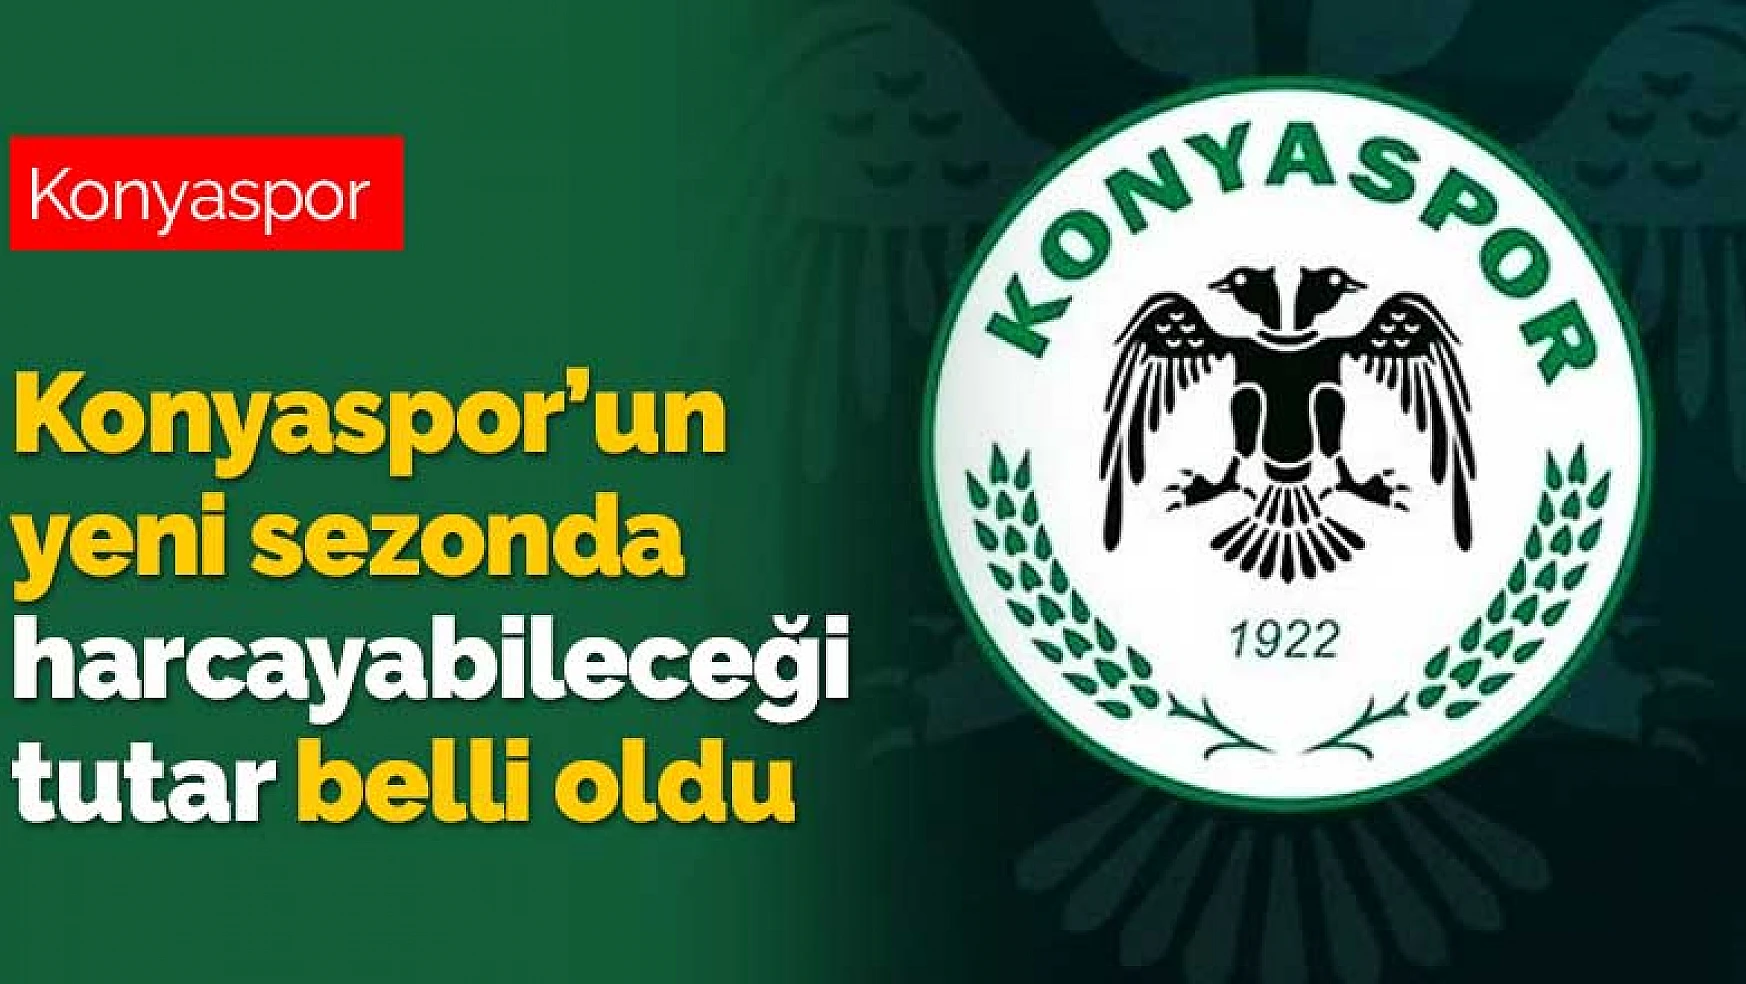 Konyaspor 2020-2021 sezonunda harcayabileceği tutar belli oldu